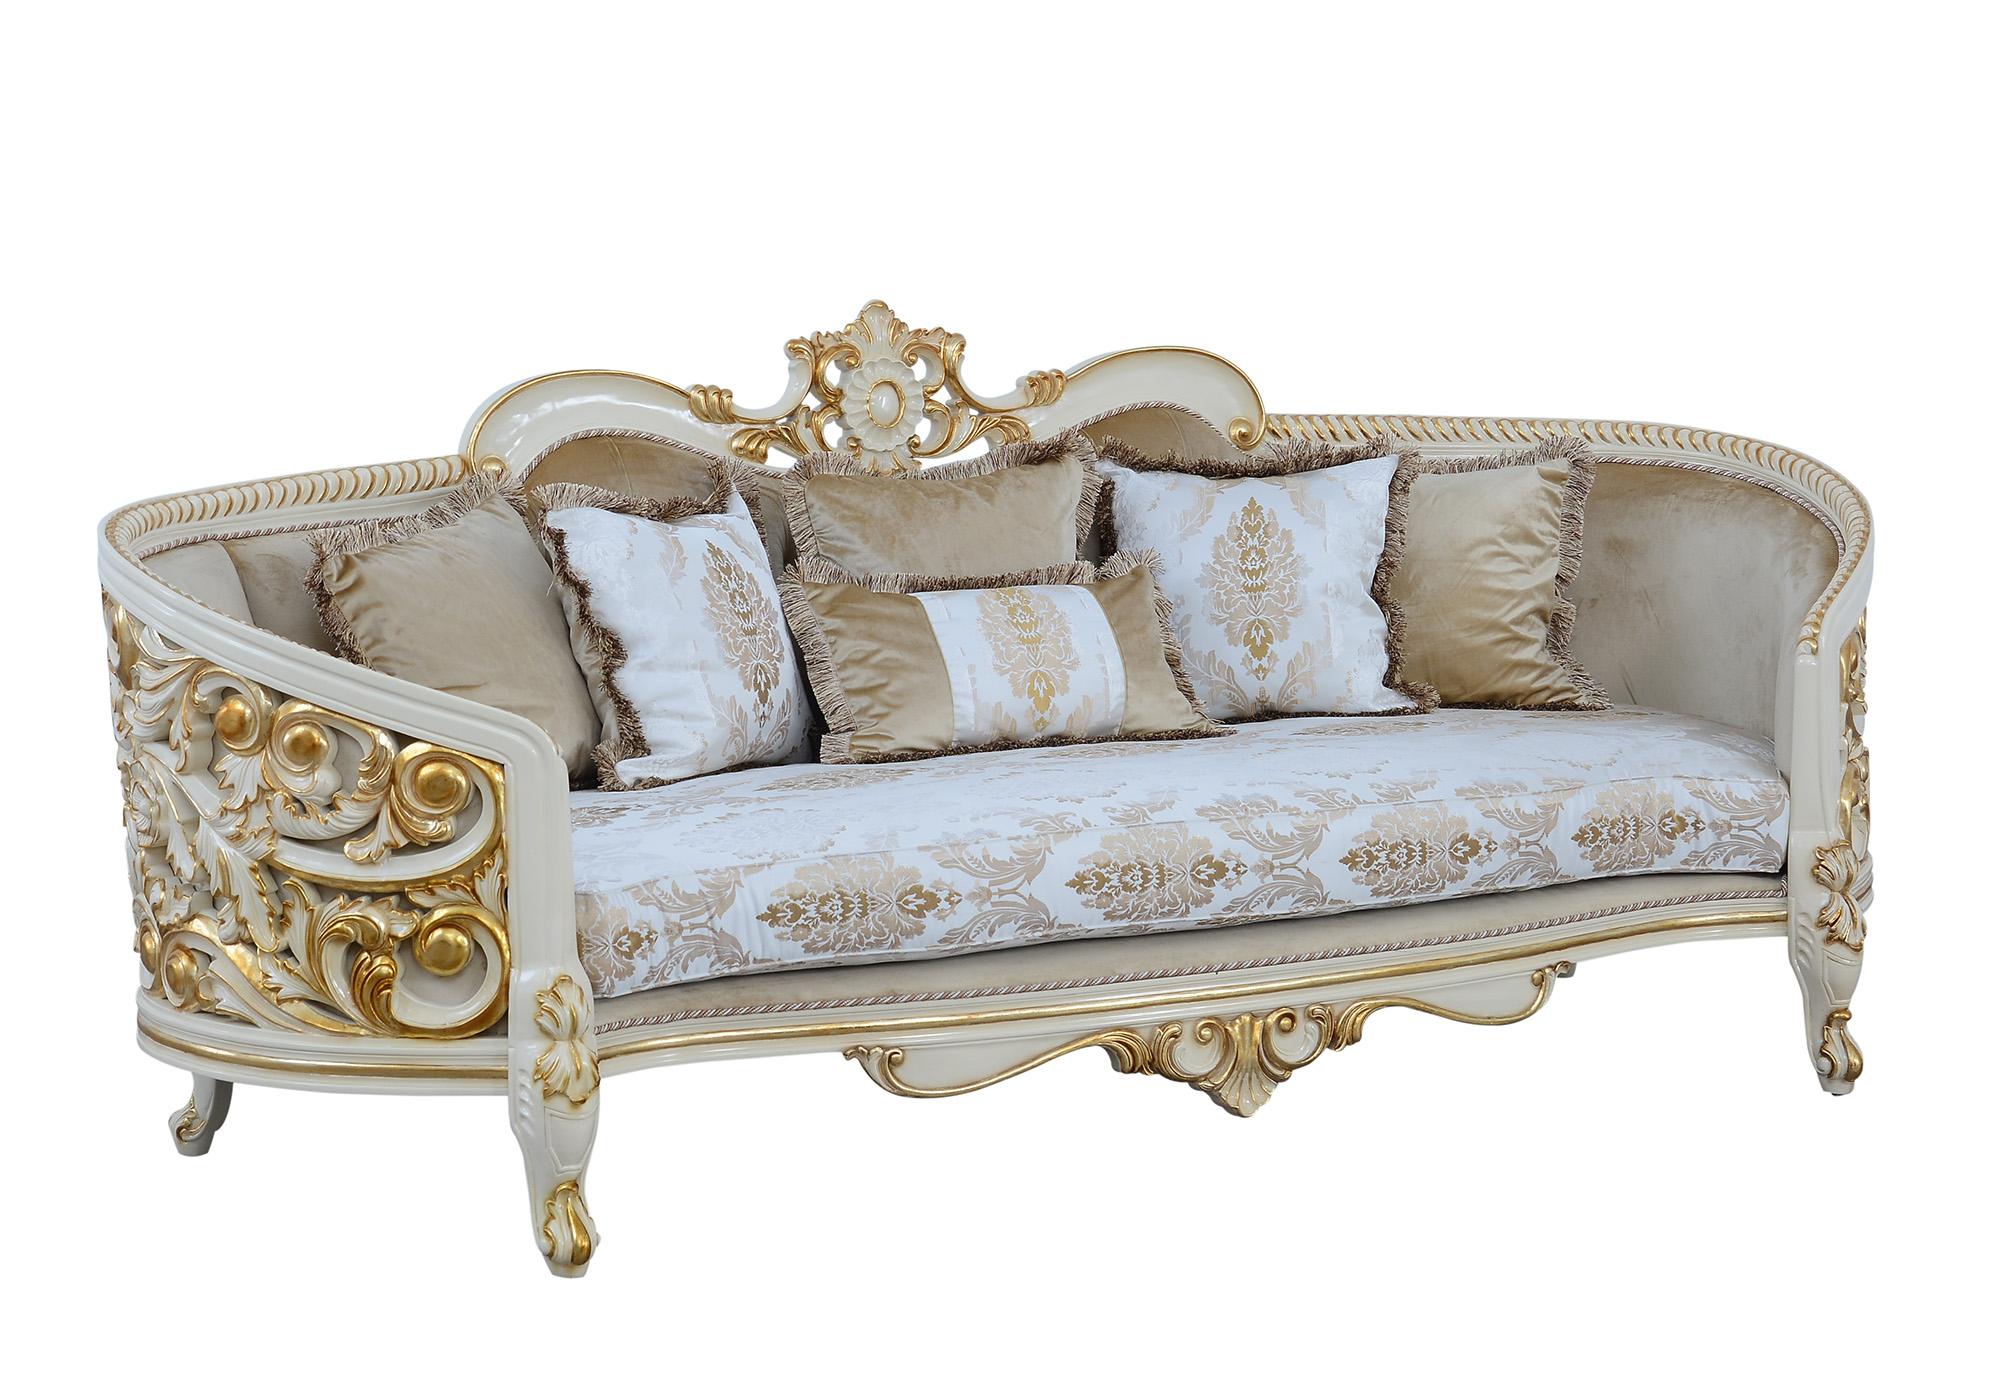 Classic, Traditional Sofa BELLAGIO 30017-S in Antique, Gold, Beige Fabric